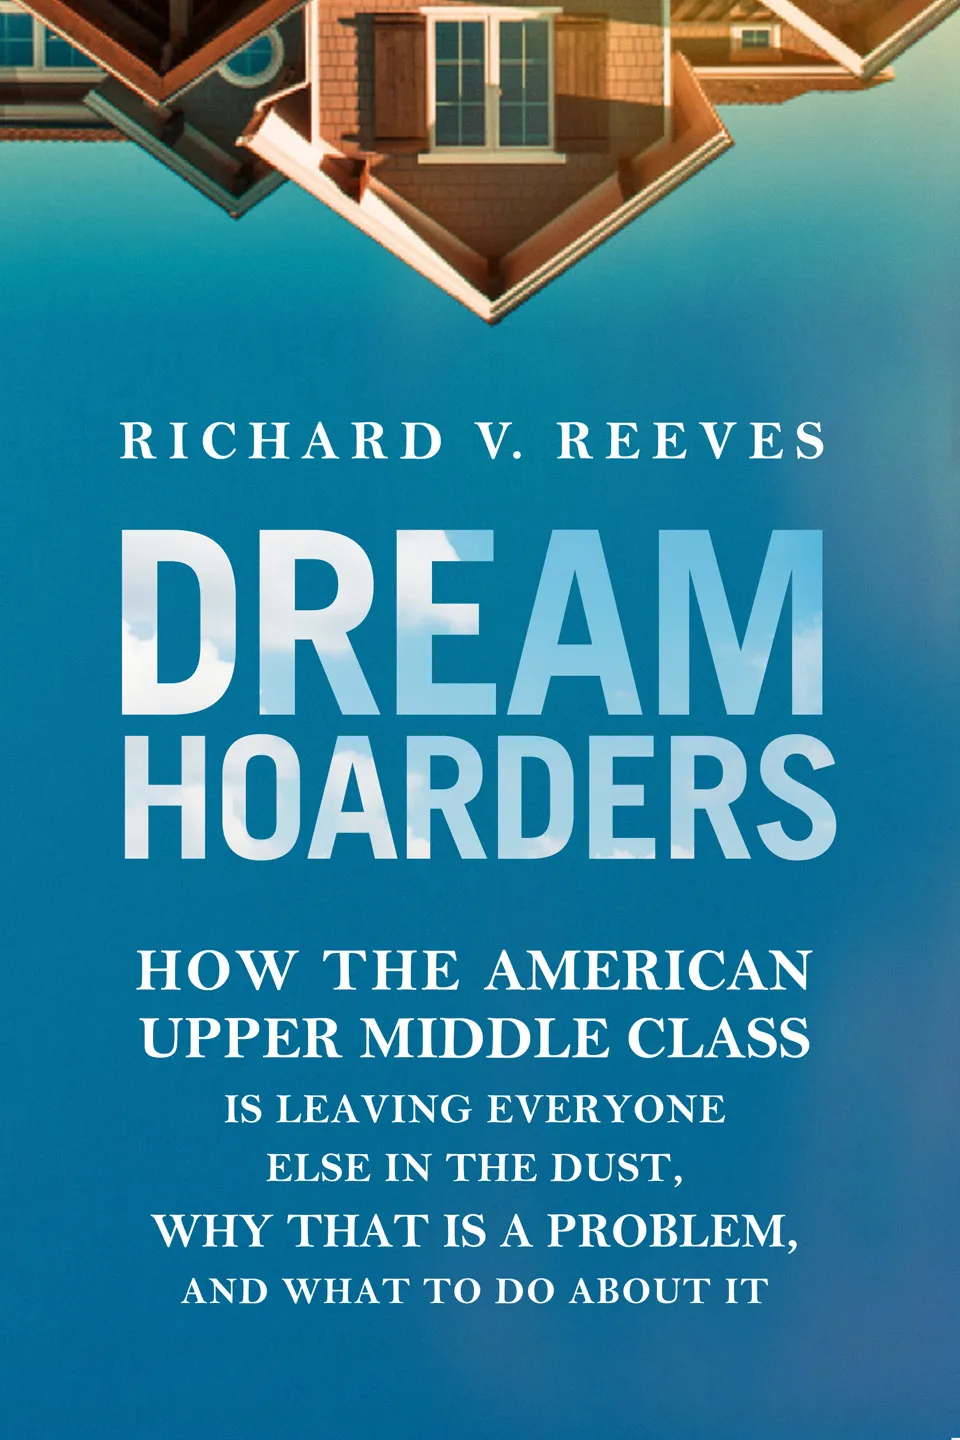 reeves-dream-hoarders1.jpg